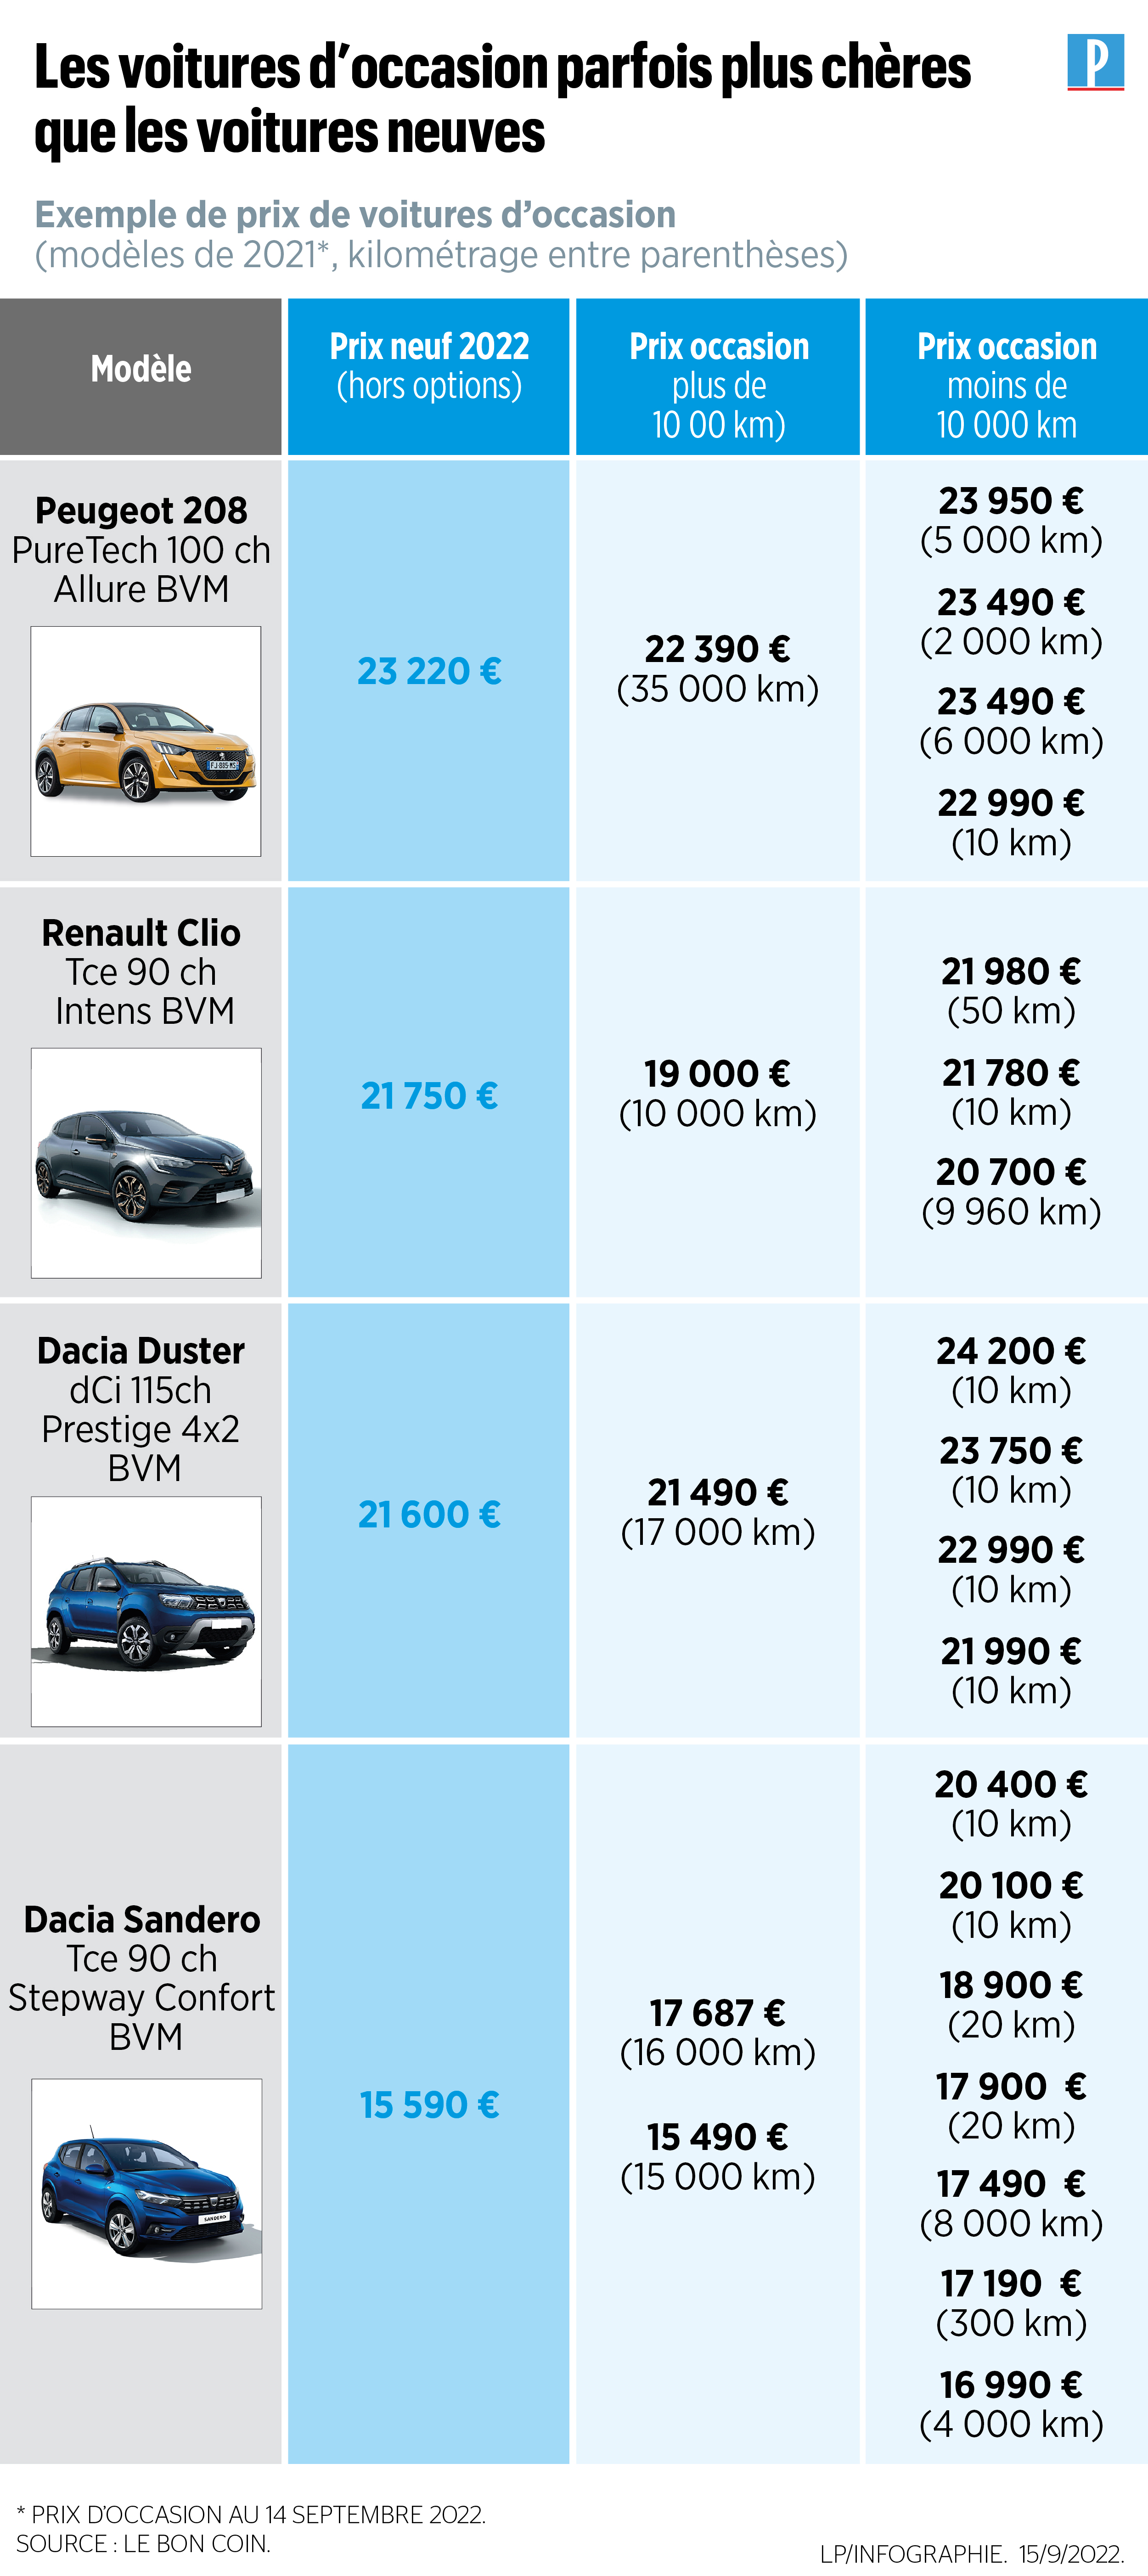 Les meilleures ventes de voitures d'occasion en France